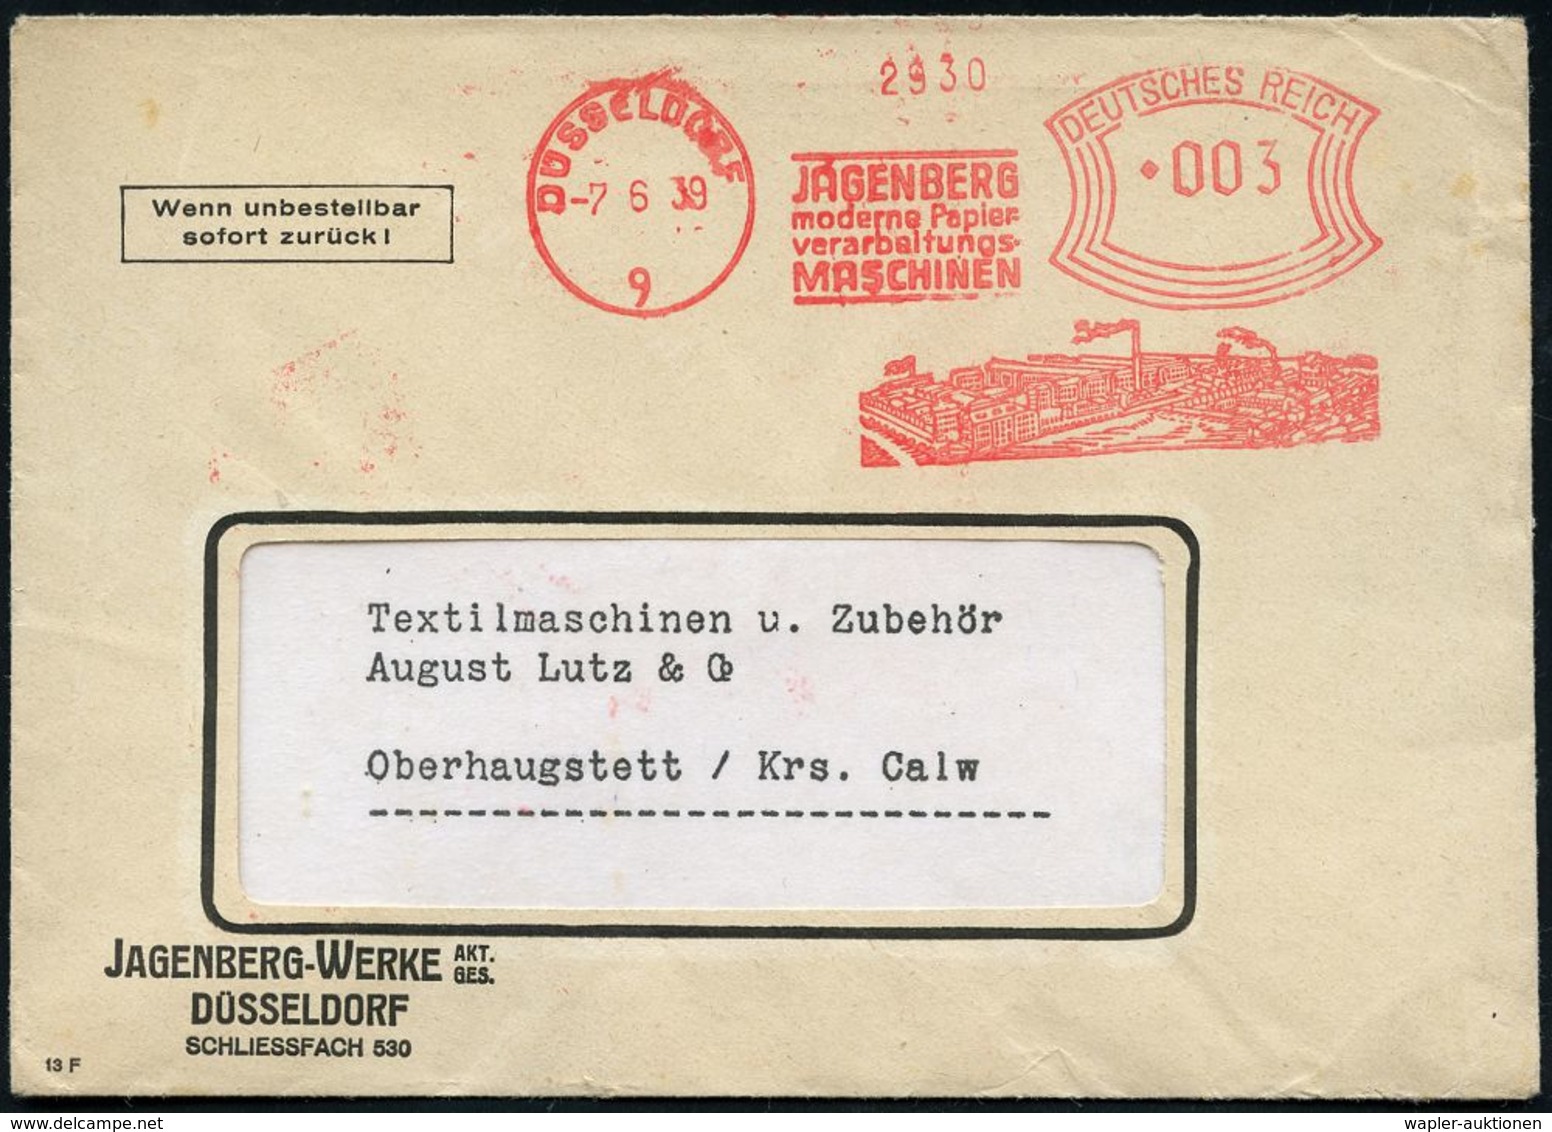 PAPIER / PAPIERVERARBEITUNG / ZELLSTOFF : DÜSSELDORF/ 9/ JAGENBERG/ Moderne Papier-/ Verarbeitungs-/ MASCHINEN 1939 (7.6 - Non Classificati